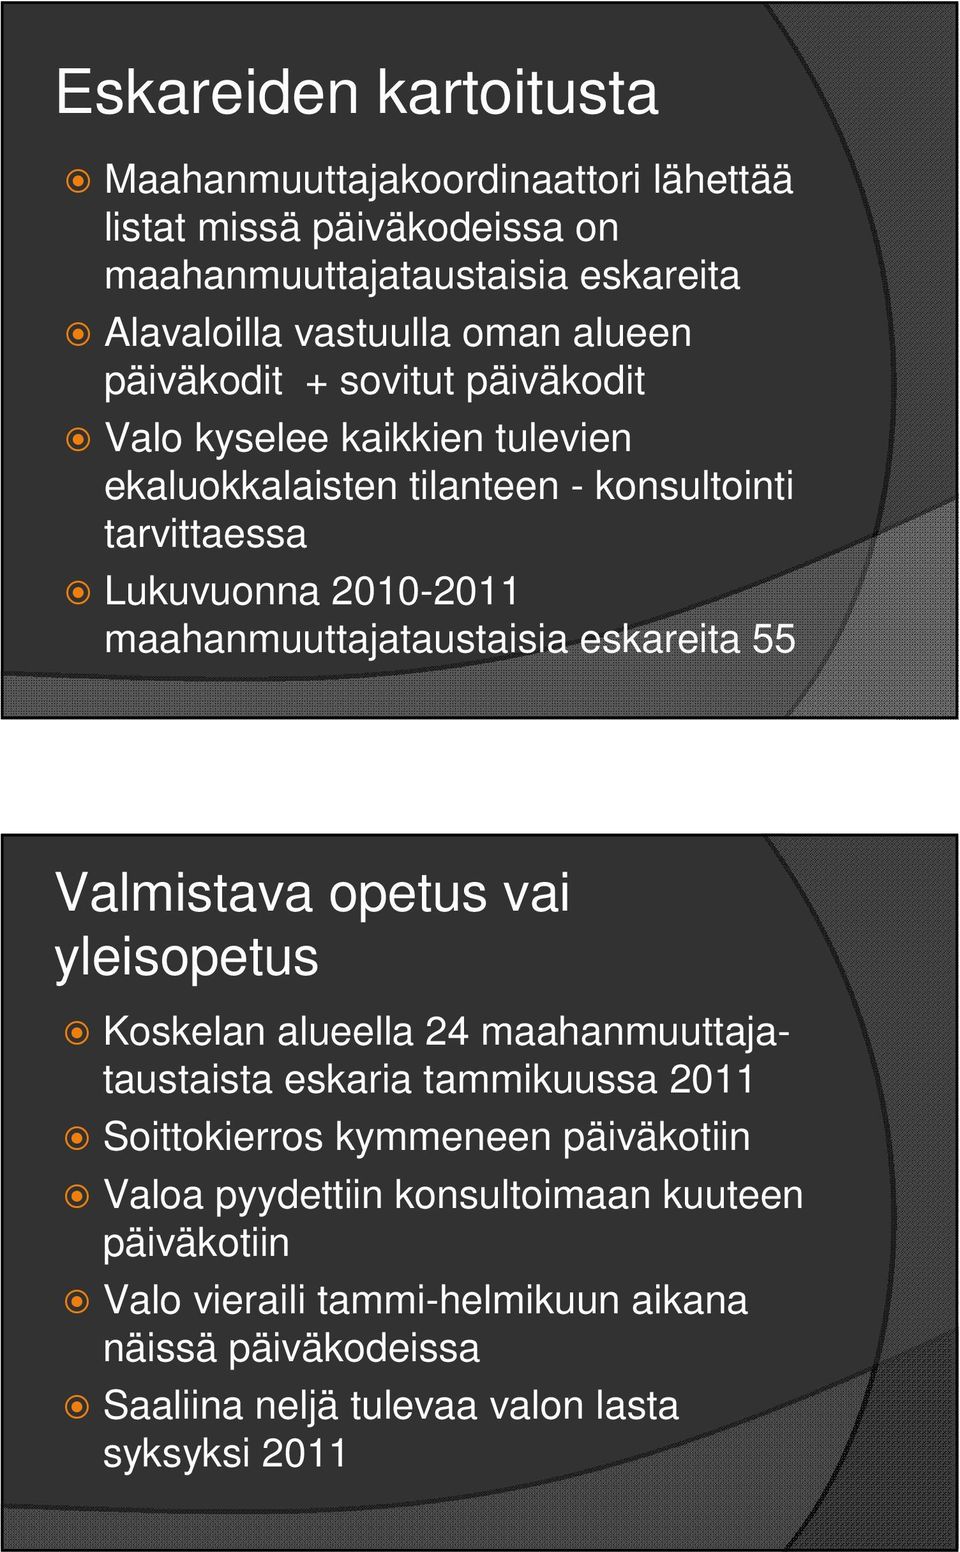 maahanmuuttajataustaisia eskareita 55 Valmistava opetus vai yleisopetus Koskelan alueella 24 maahanmuuttajataustaista eskaria tammikuussa 2011 Soittokierros